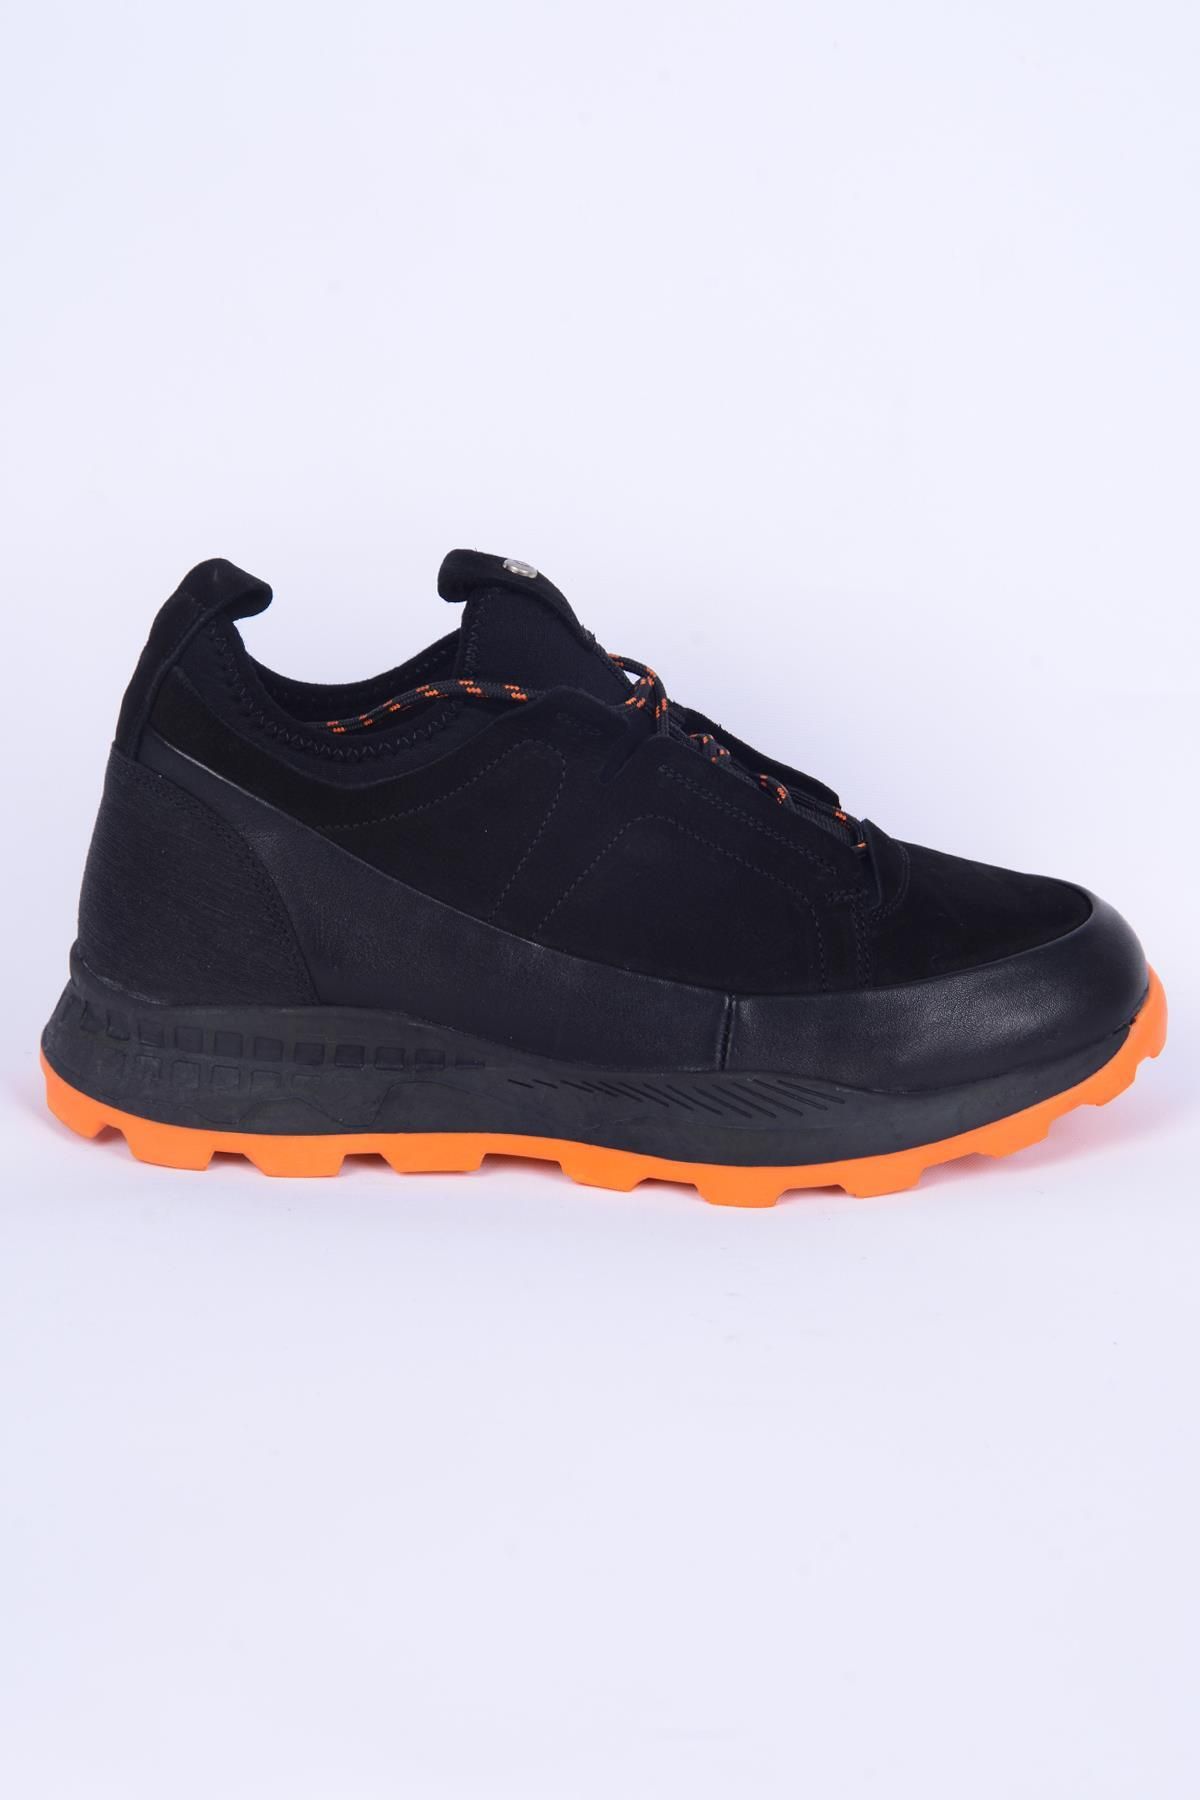 Pierre Cardin 10201 Siyah Kışlık Erkek Ayakkabı